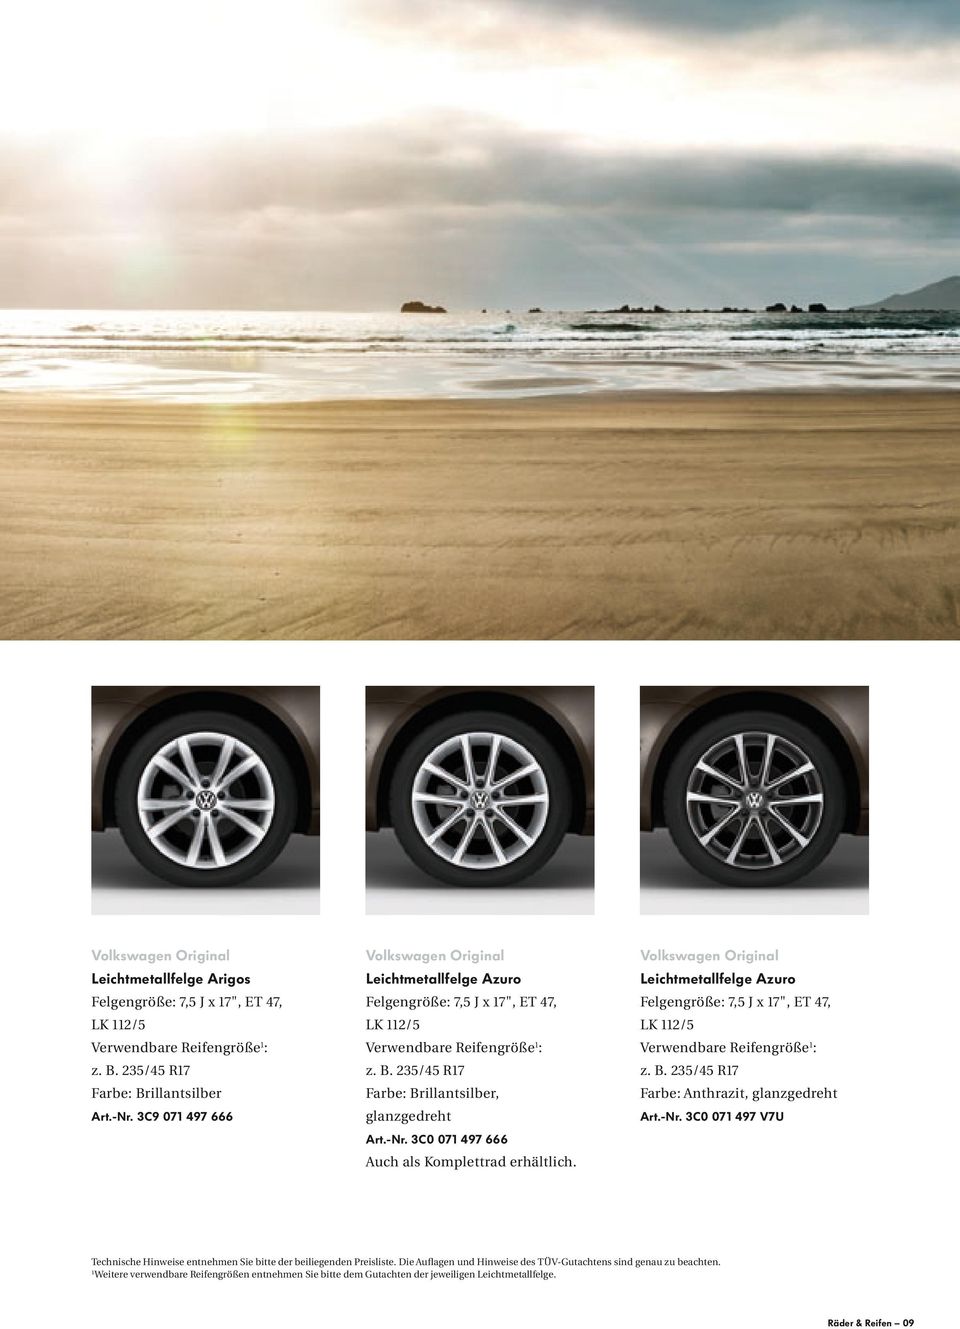 3C0 071 497 666 Auch als Komplettrad erhältlich. Volkswagen Original Leichtmetallfelge Azuro Felgengröße: 7,5 J x 17", ET 47, LK 112/5 Verwendbare Reifengröße 1 : z. B.